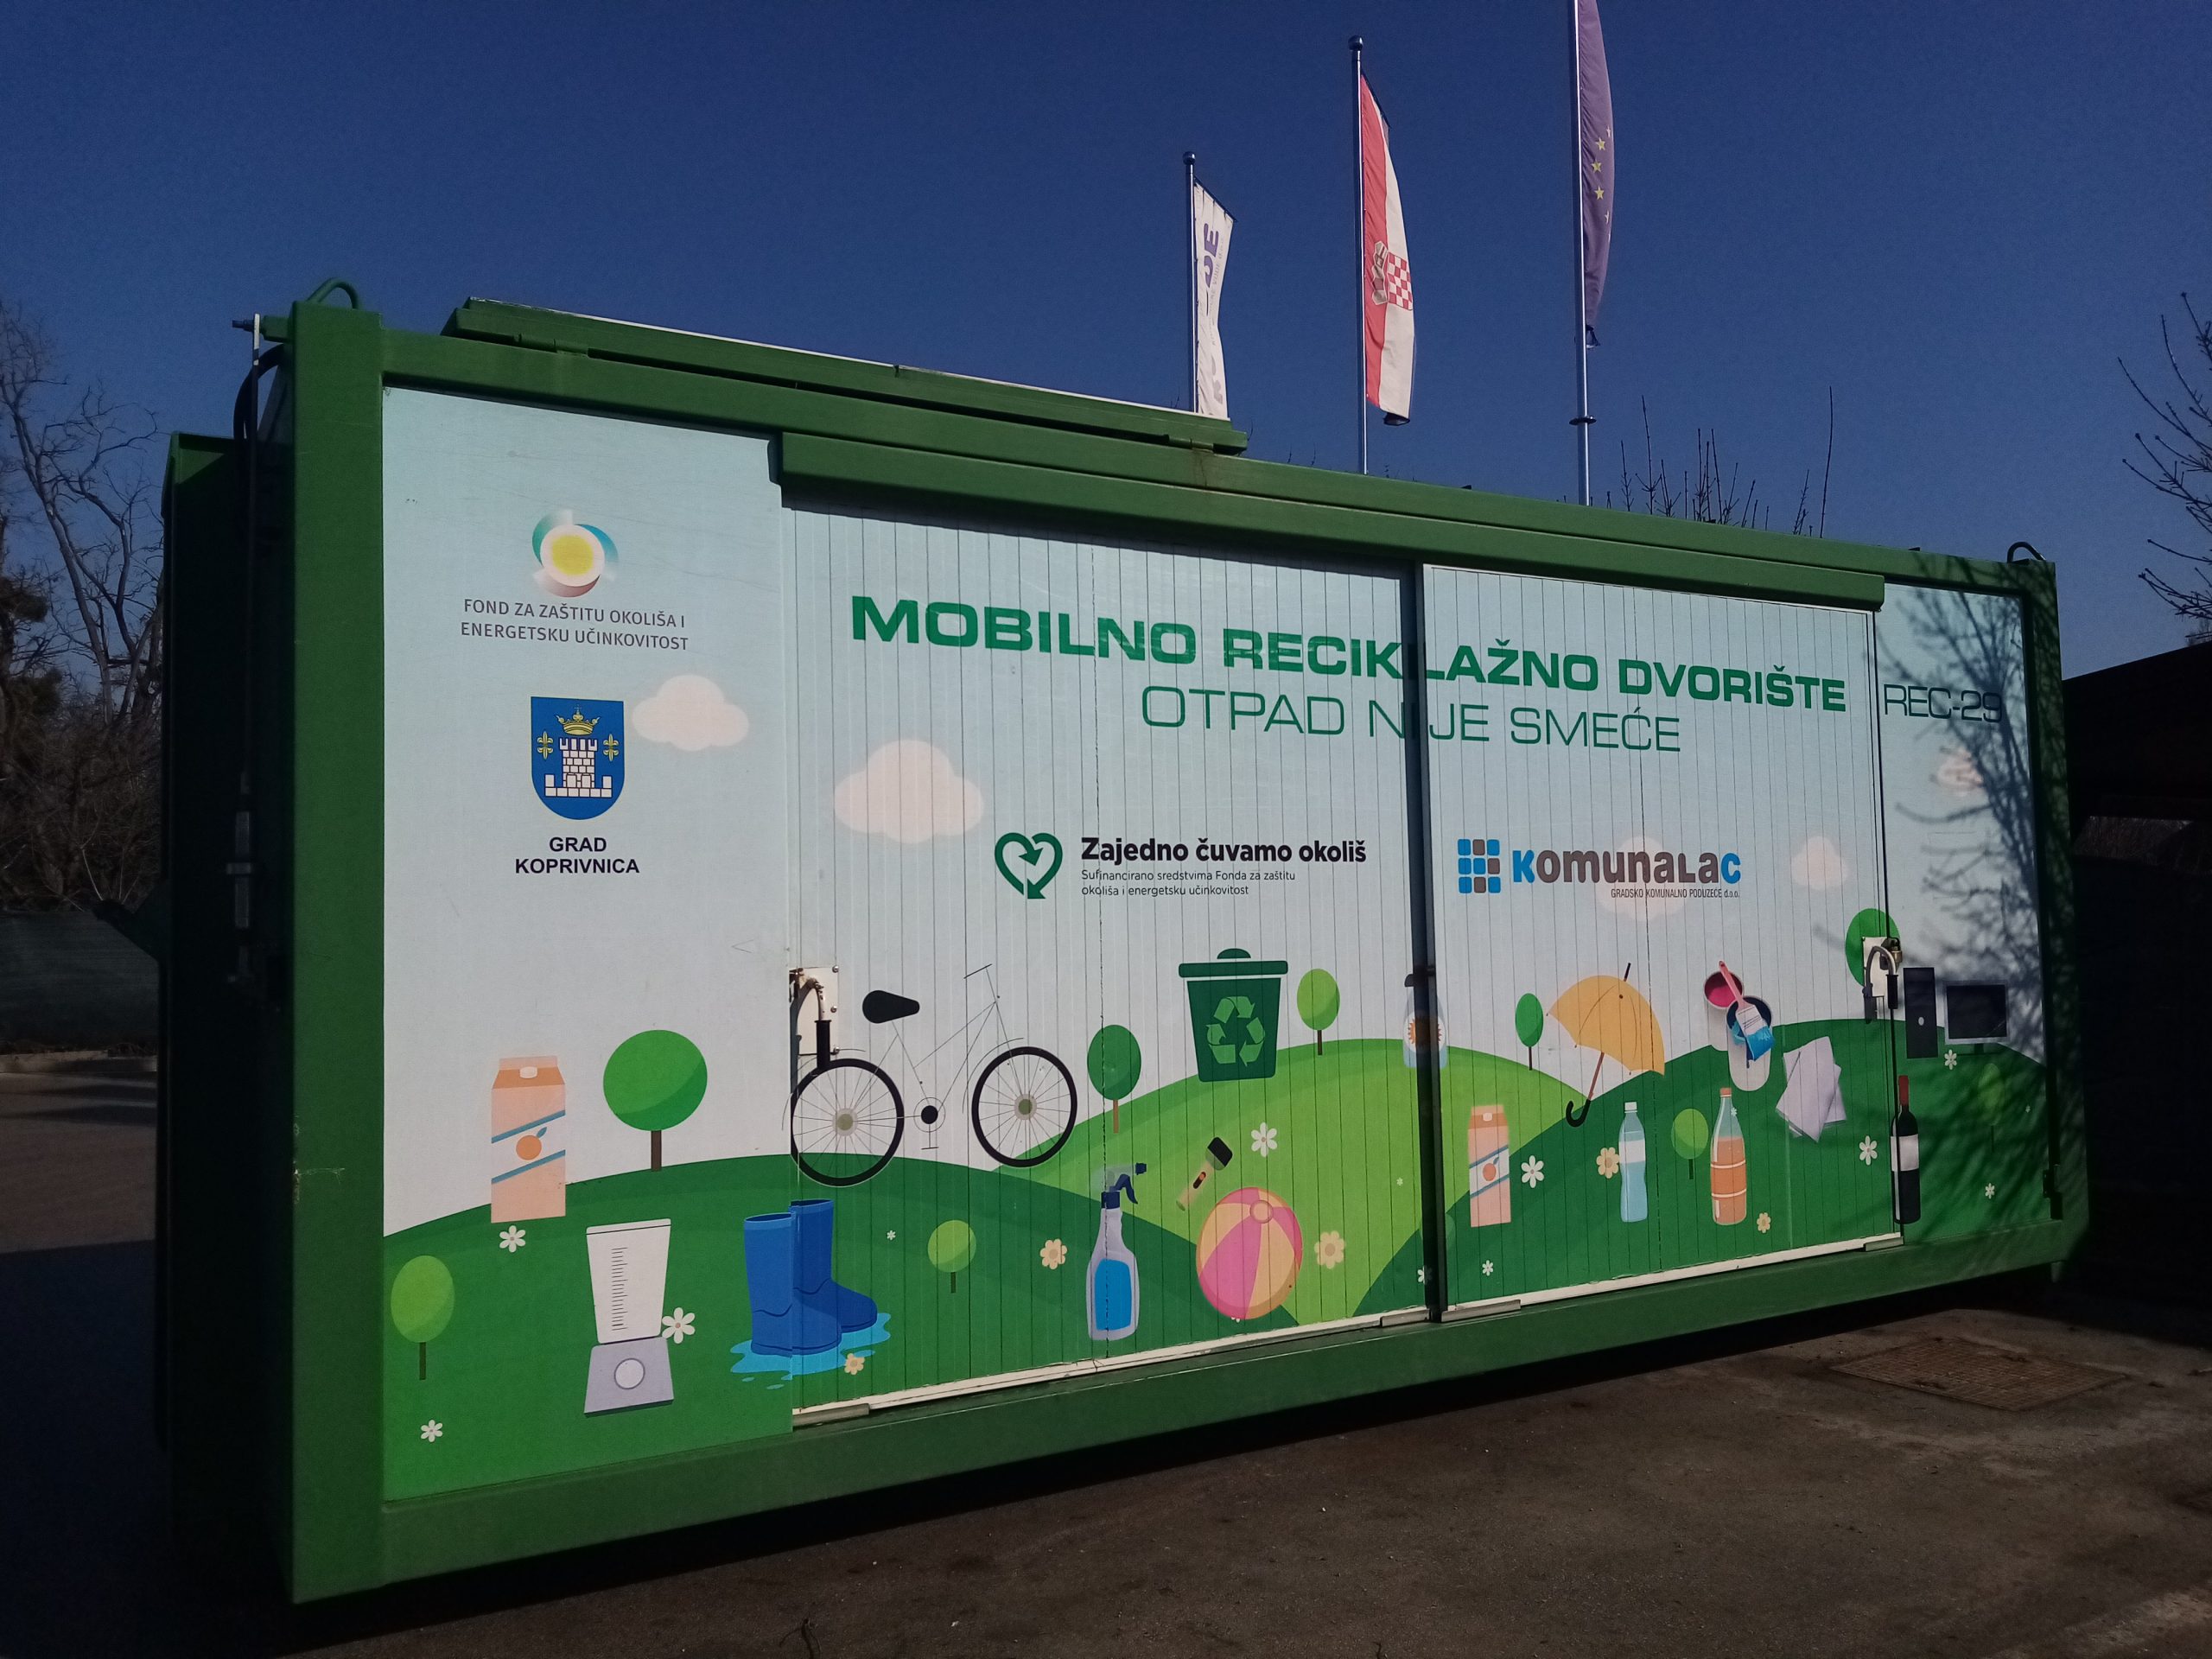 Mobilno reciklažno dvorište u utorak, 10. svibnja, nalazit će se u općini Sokolovac